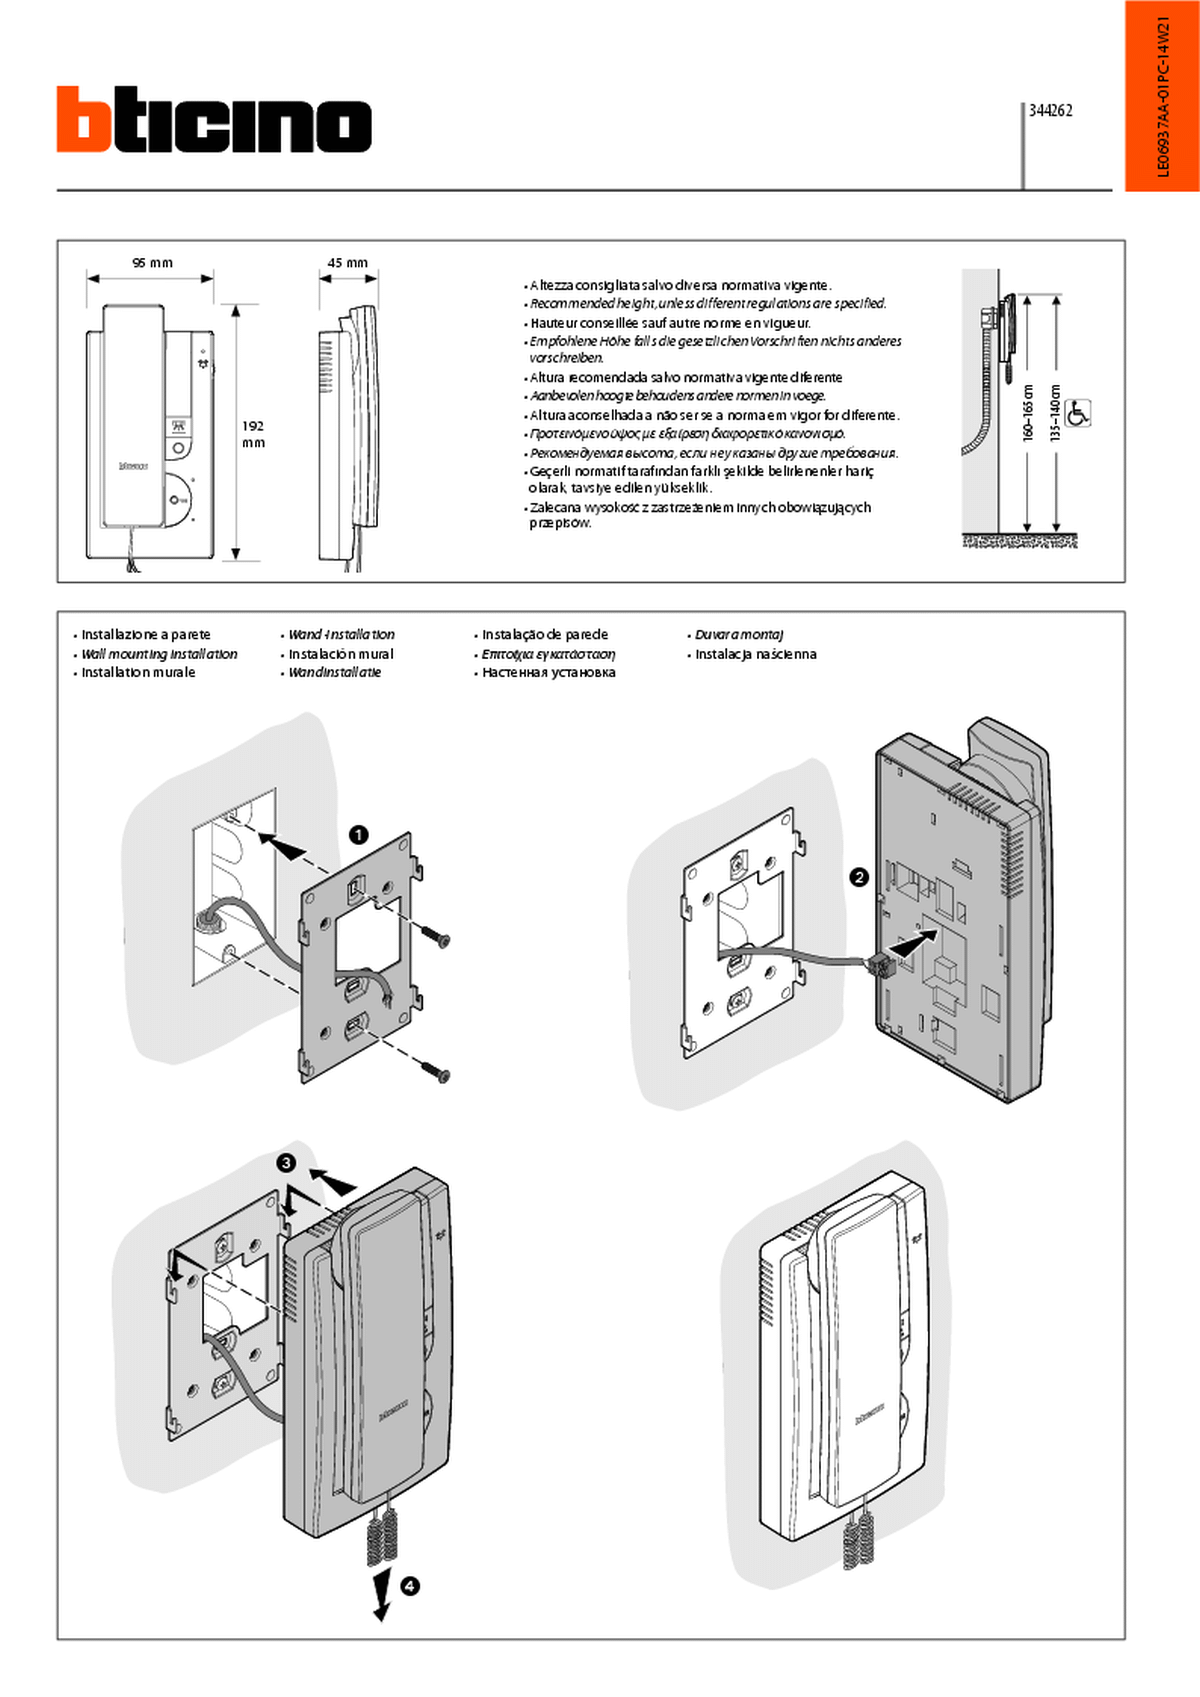 Fabrieksschema T-45 instruction sheet